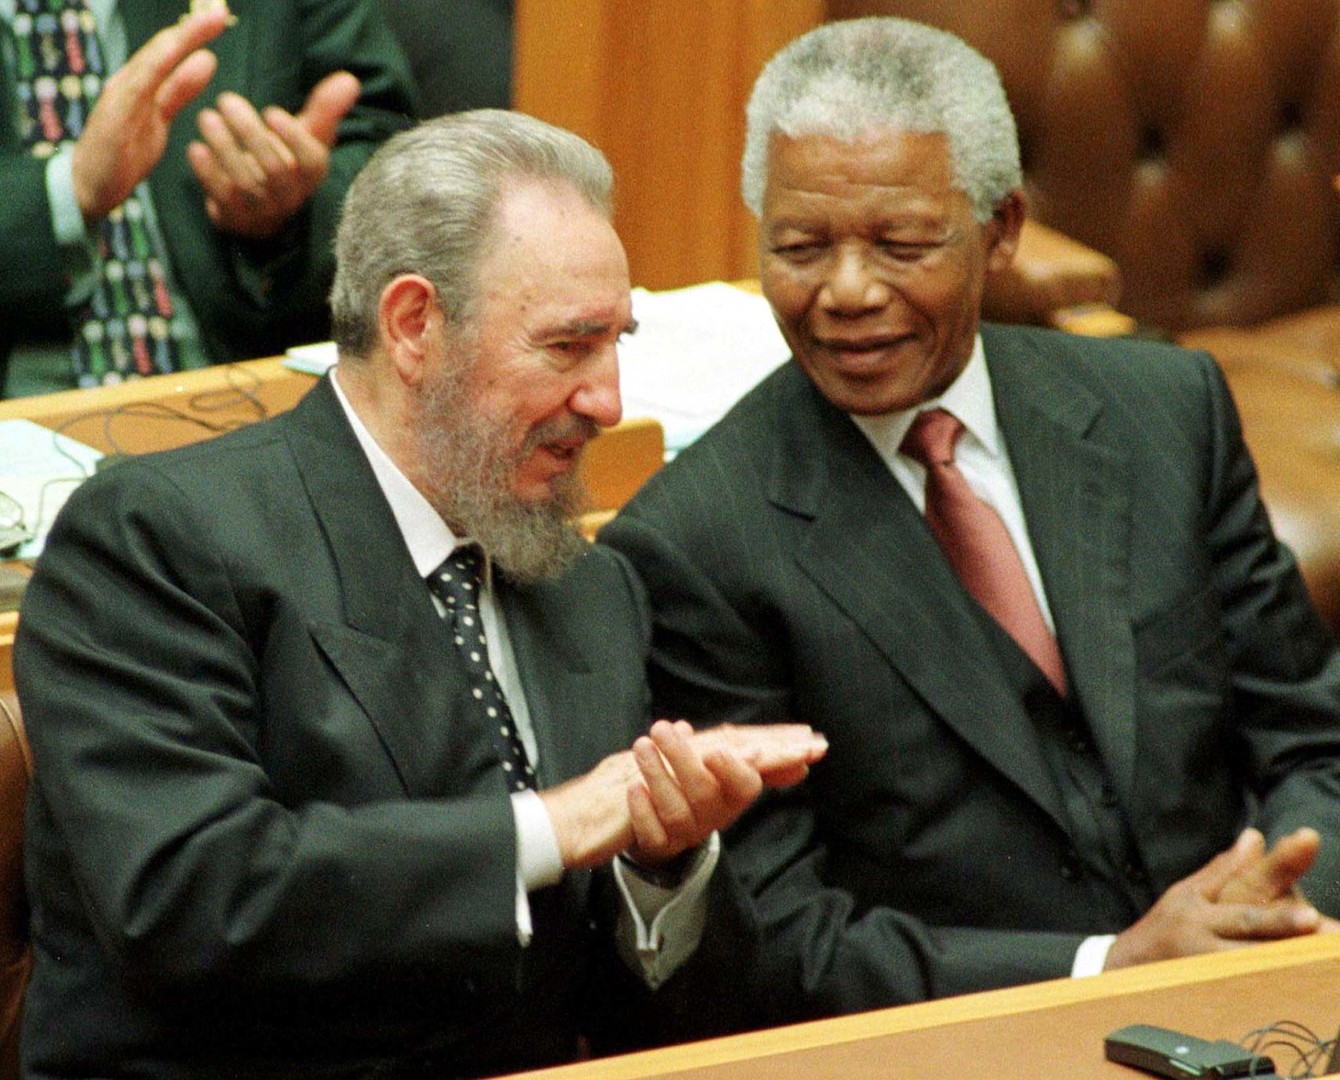 Fidel Castro und Nelson Mandela im Gespräch im südafrikanischen Parlament, September 1995